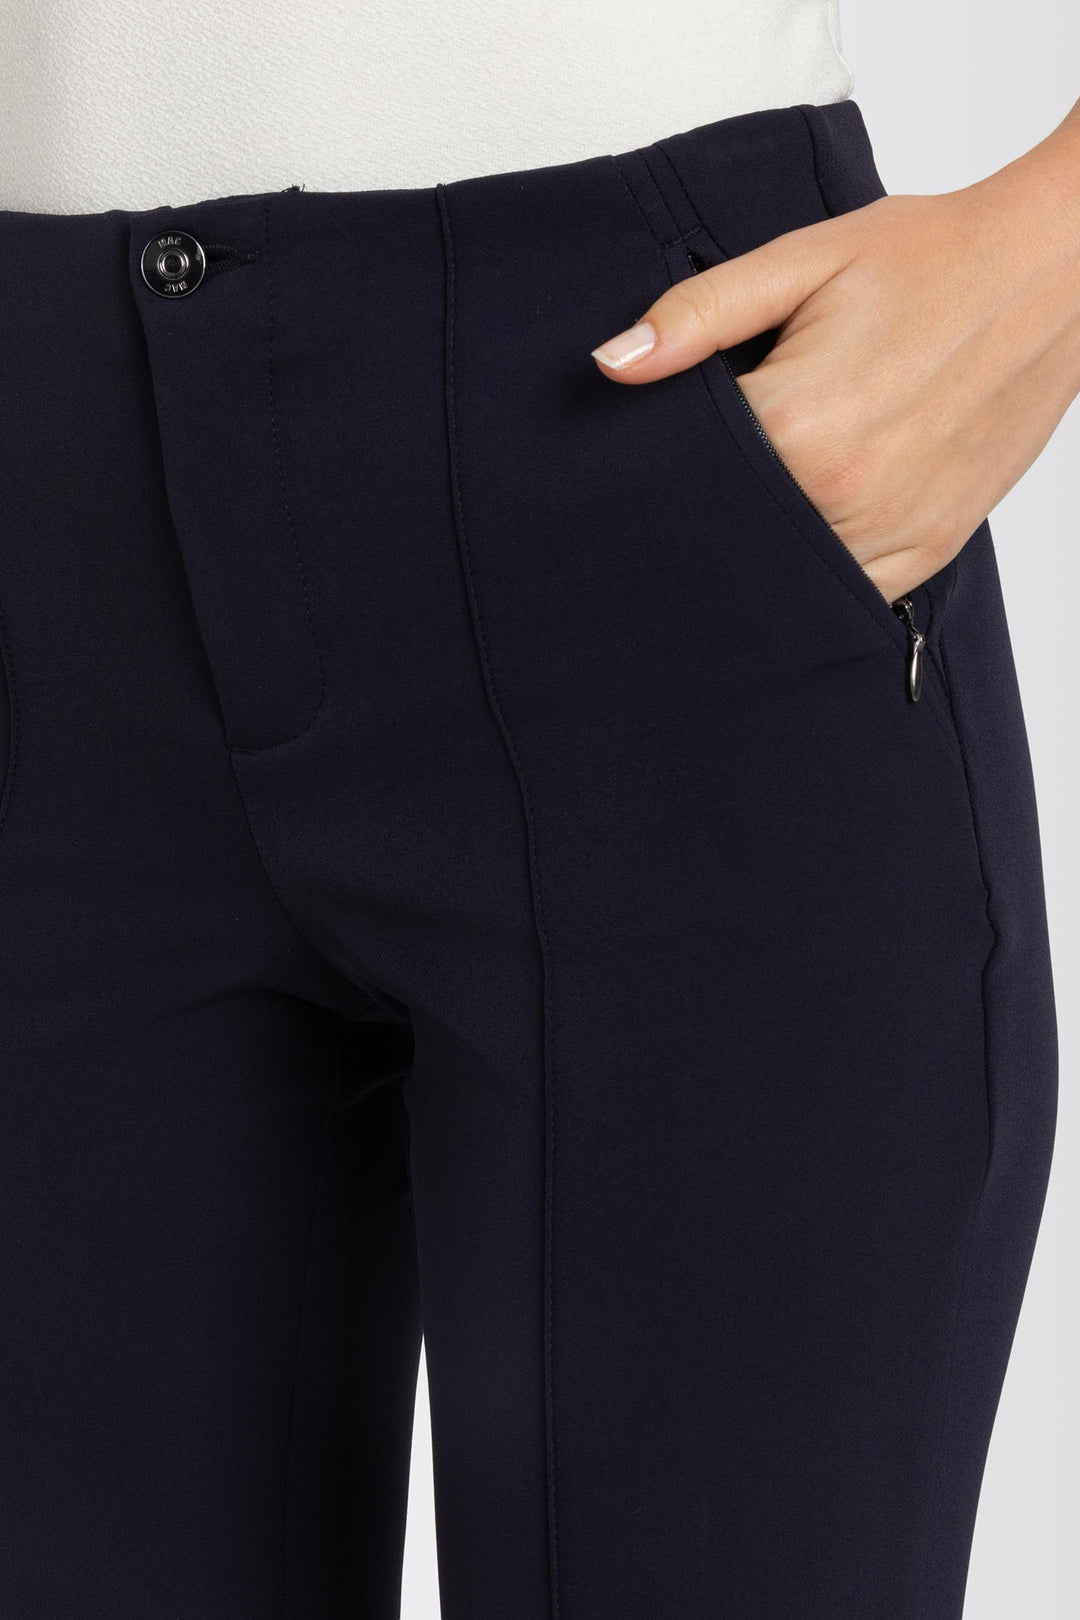 Mac 5293-00-0128L 198 Anna Dark Blue Bistretch Trousers - Olivia Grace Fashion